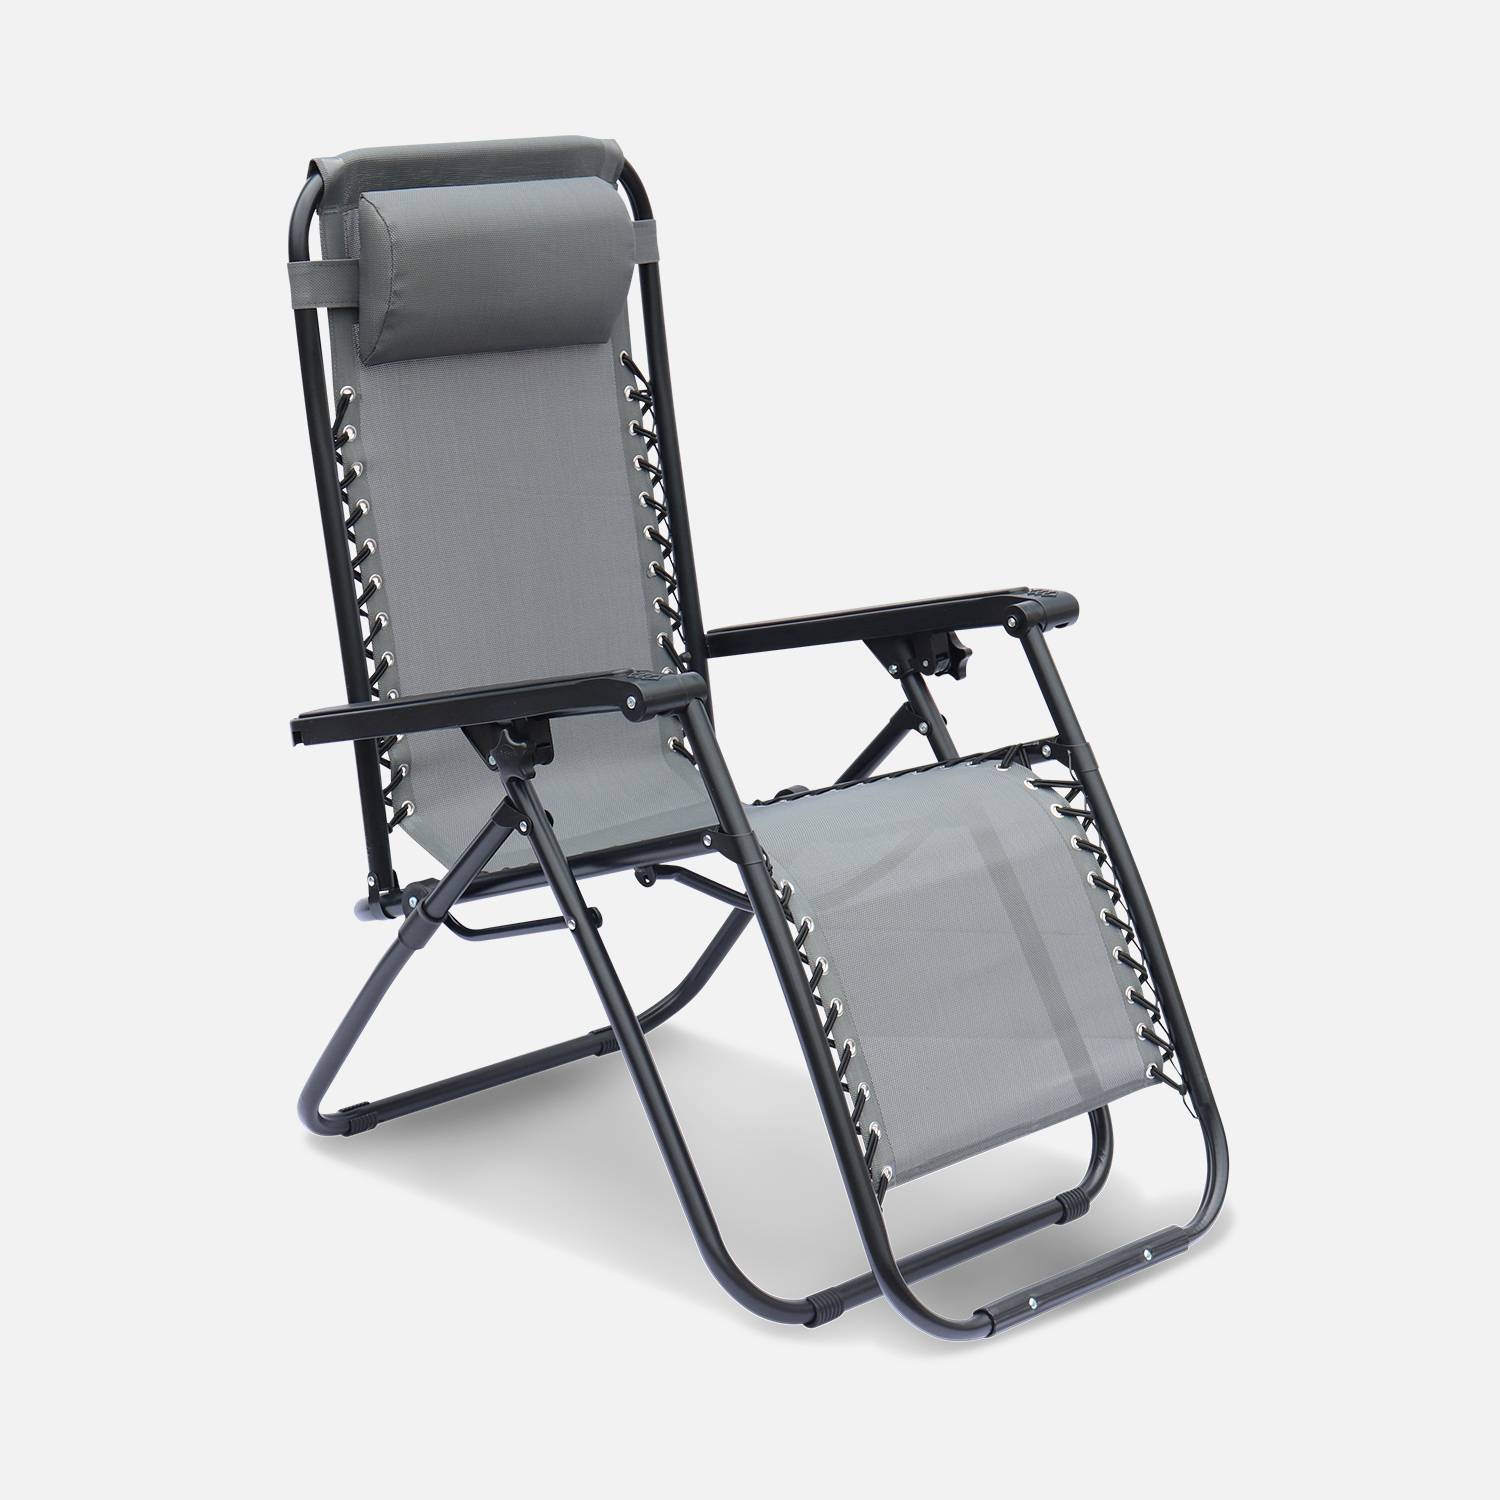 Lote de 2 sillones relax – Patricio – Textileno, plegables, multiposiciones, gris Photo4